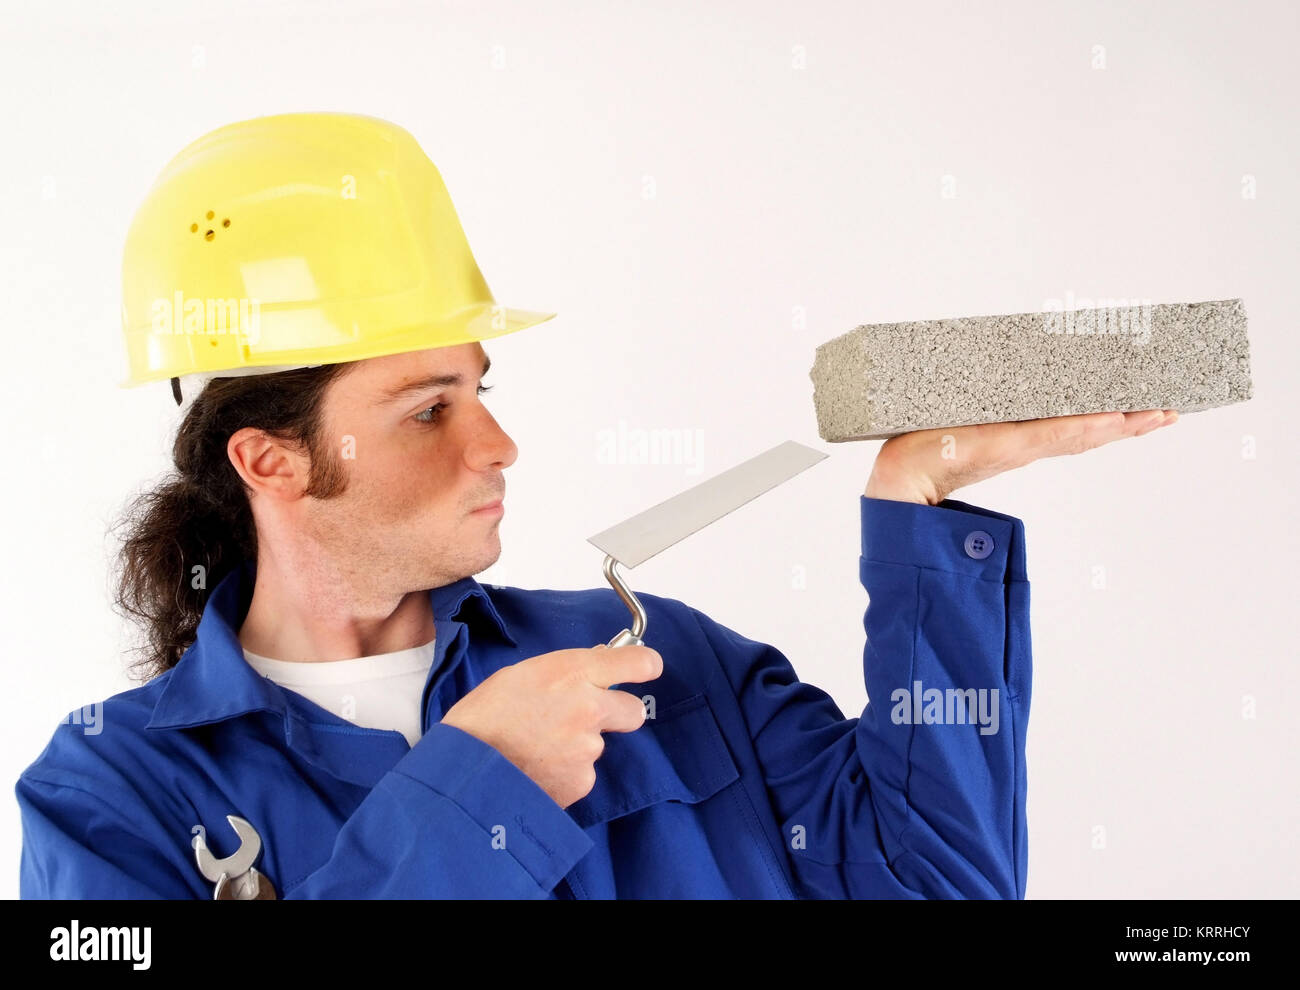 Bauarbeiter mit Blaumann, Bauhelm und Werkzeug - building worker with tools Stock Photo